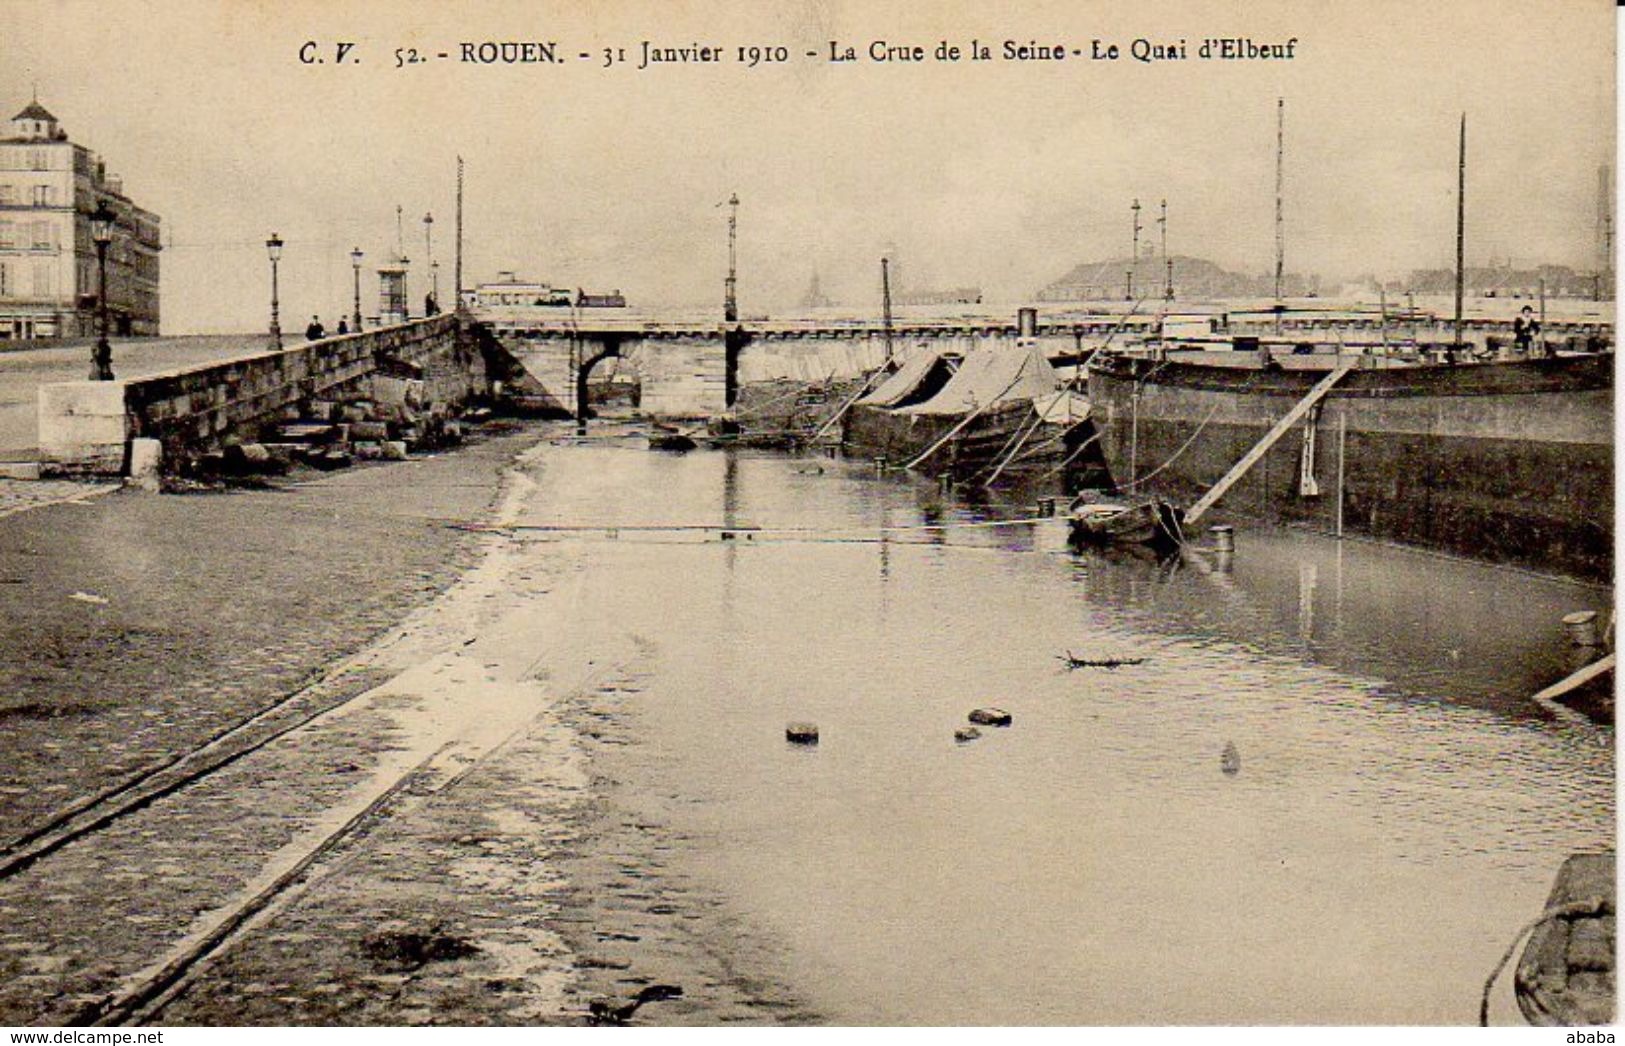 ROUEN 31 JANVIER 1910 LA CRUE DE LA SEINE LE QUAI D ELBEUF - Rouen